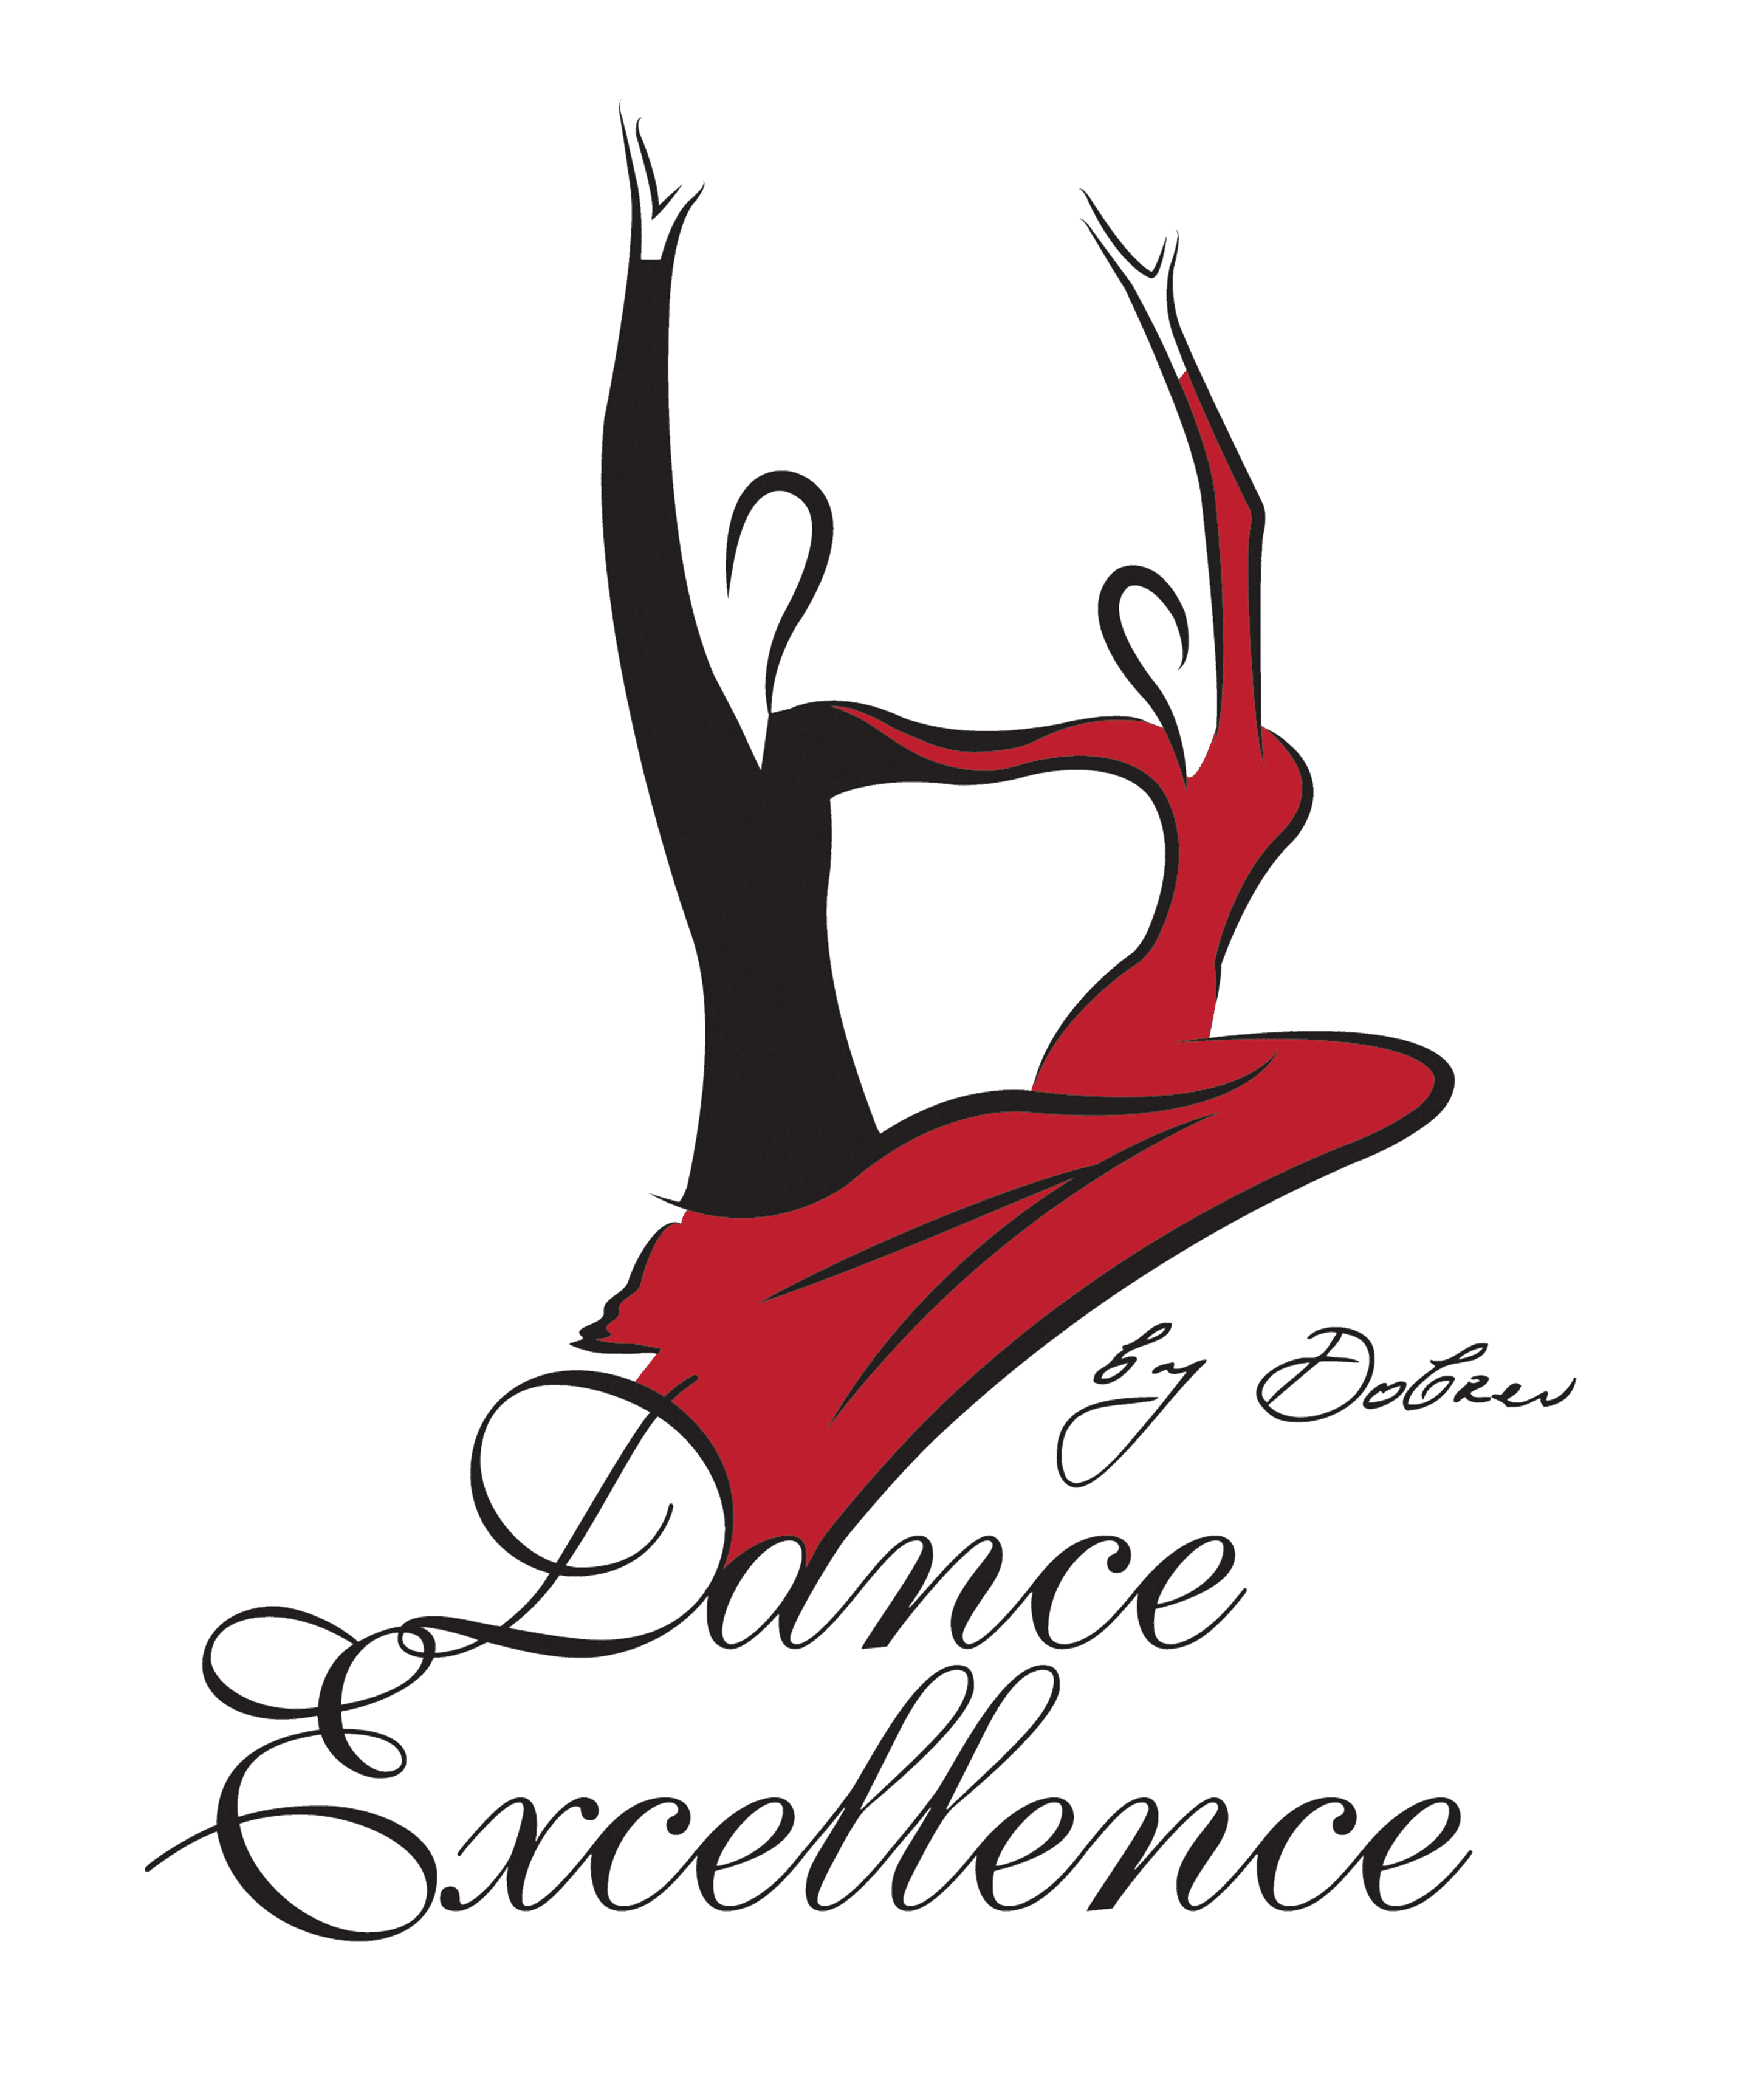 dance-excellence-Oldsmar-logo-footer